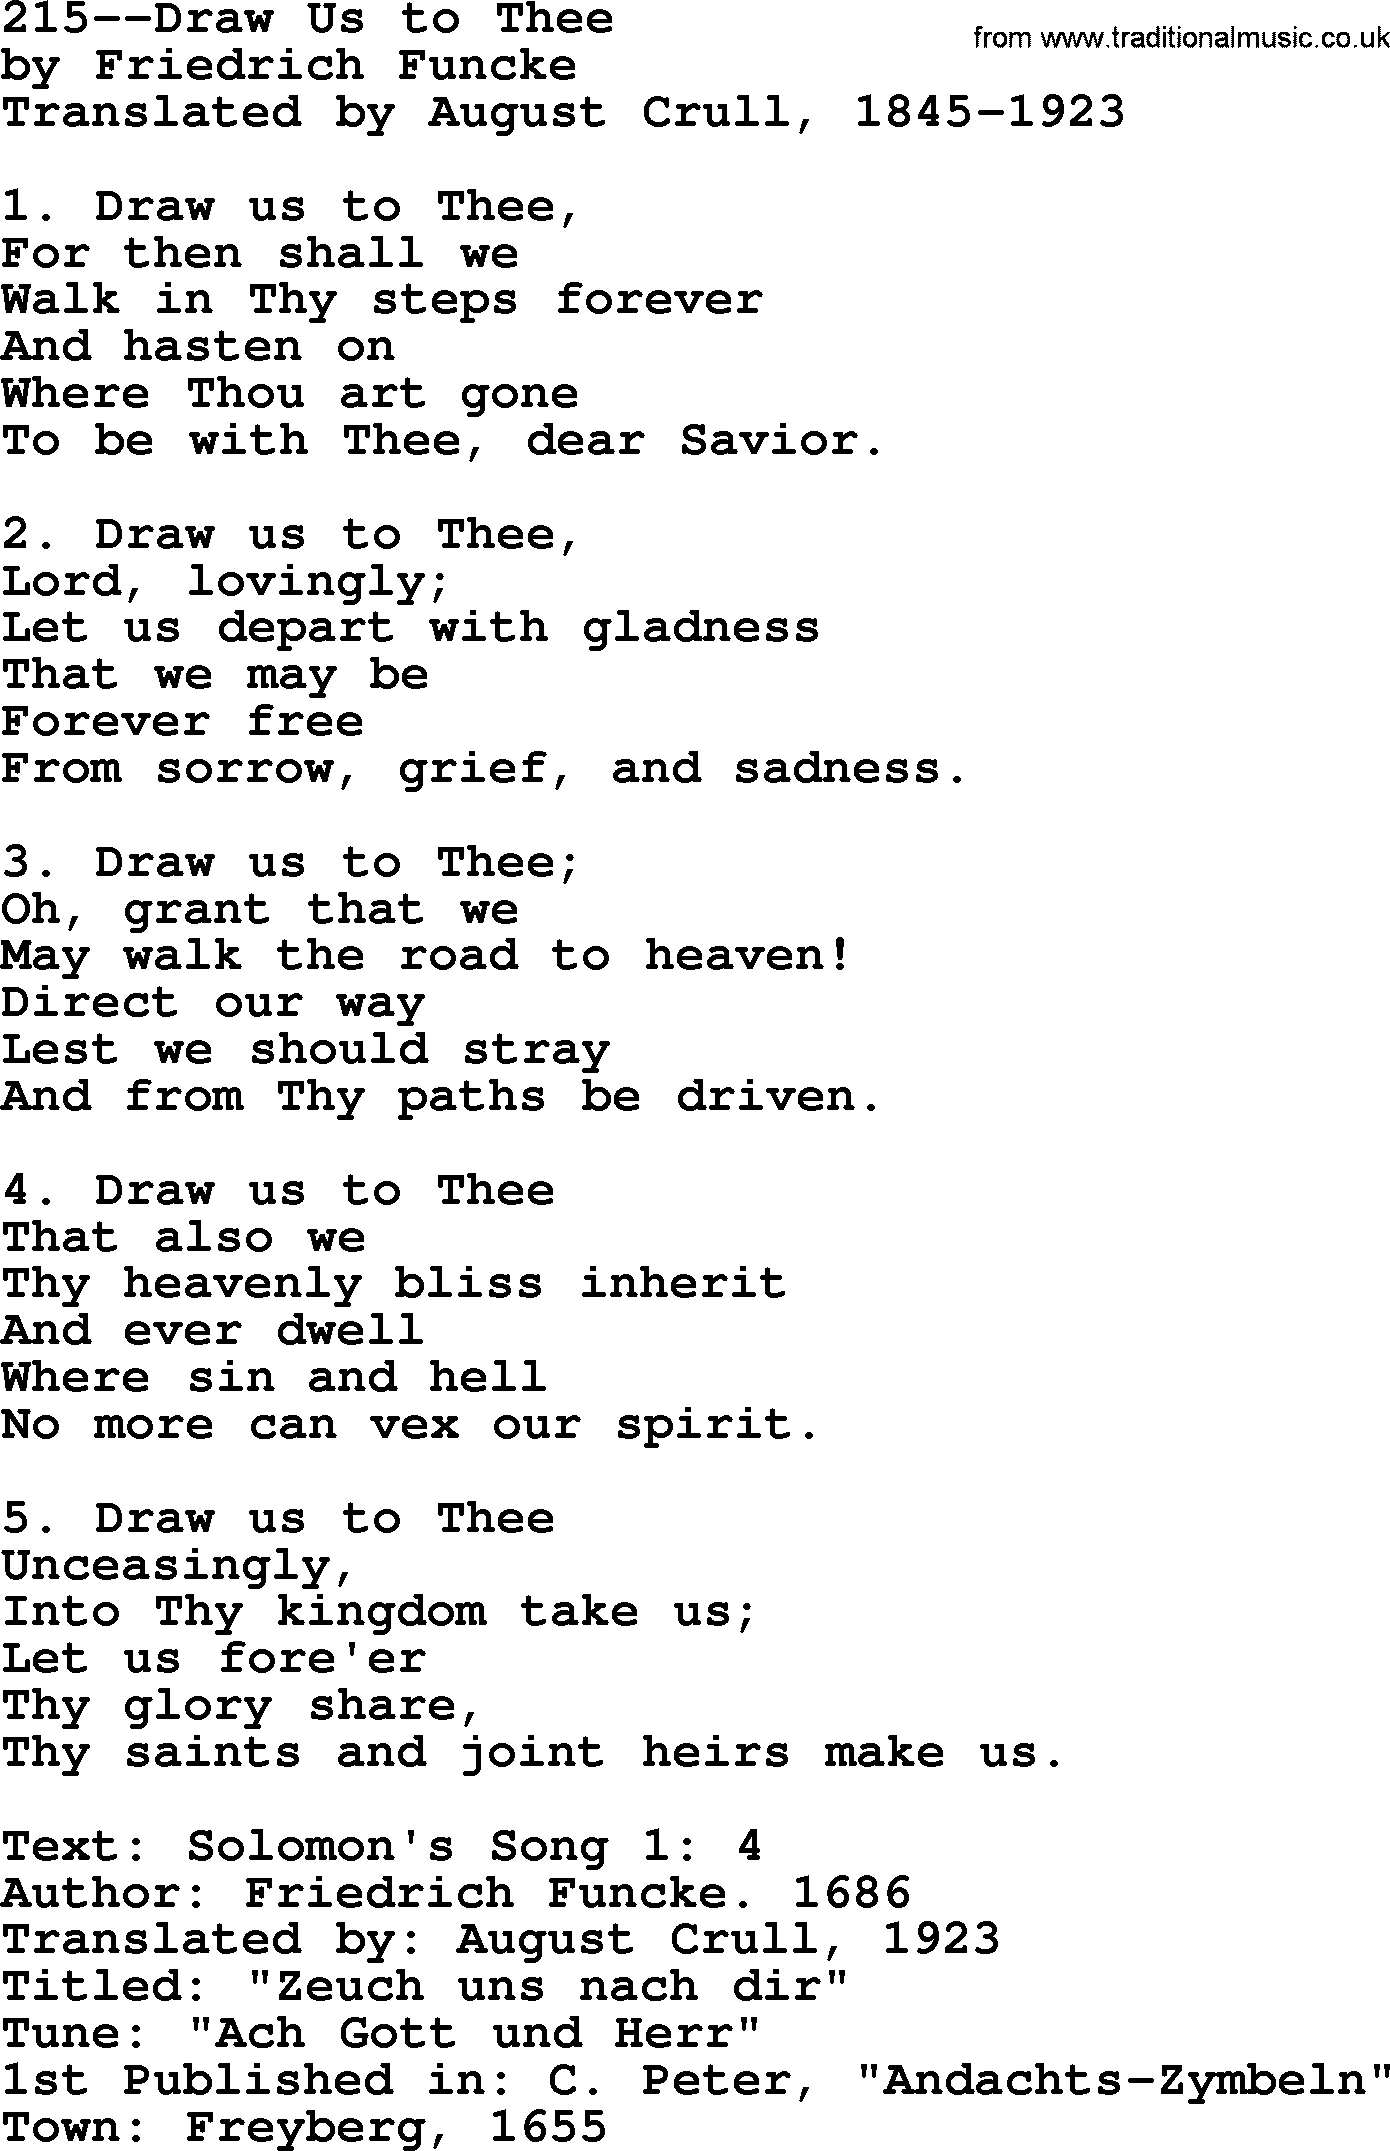 Lutheran Hymn: 215--Draw Us to Thee.txt lyrics with PDF